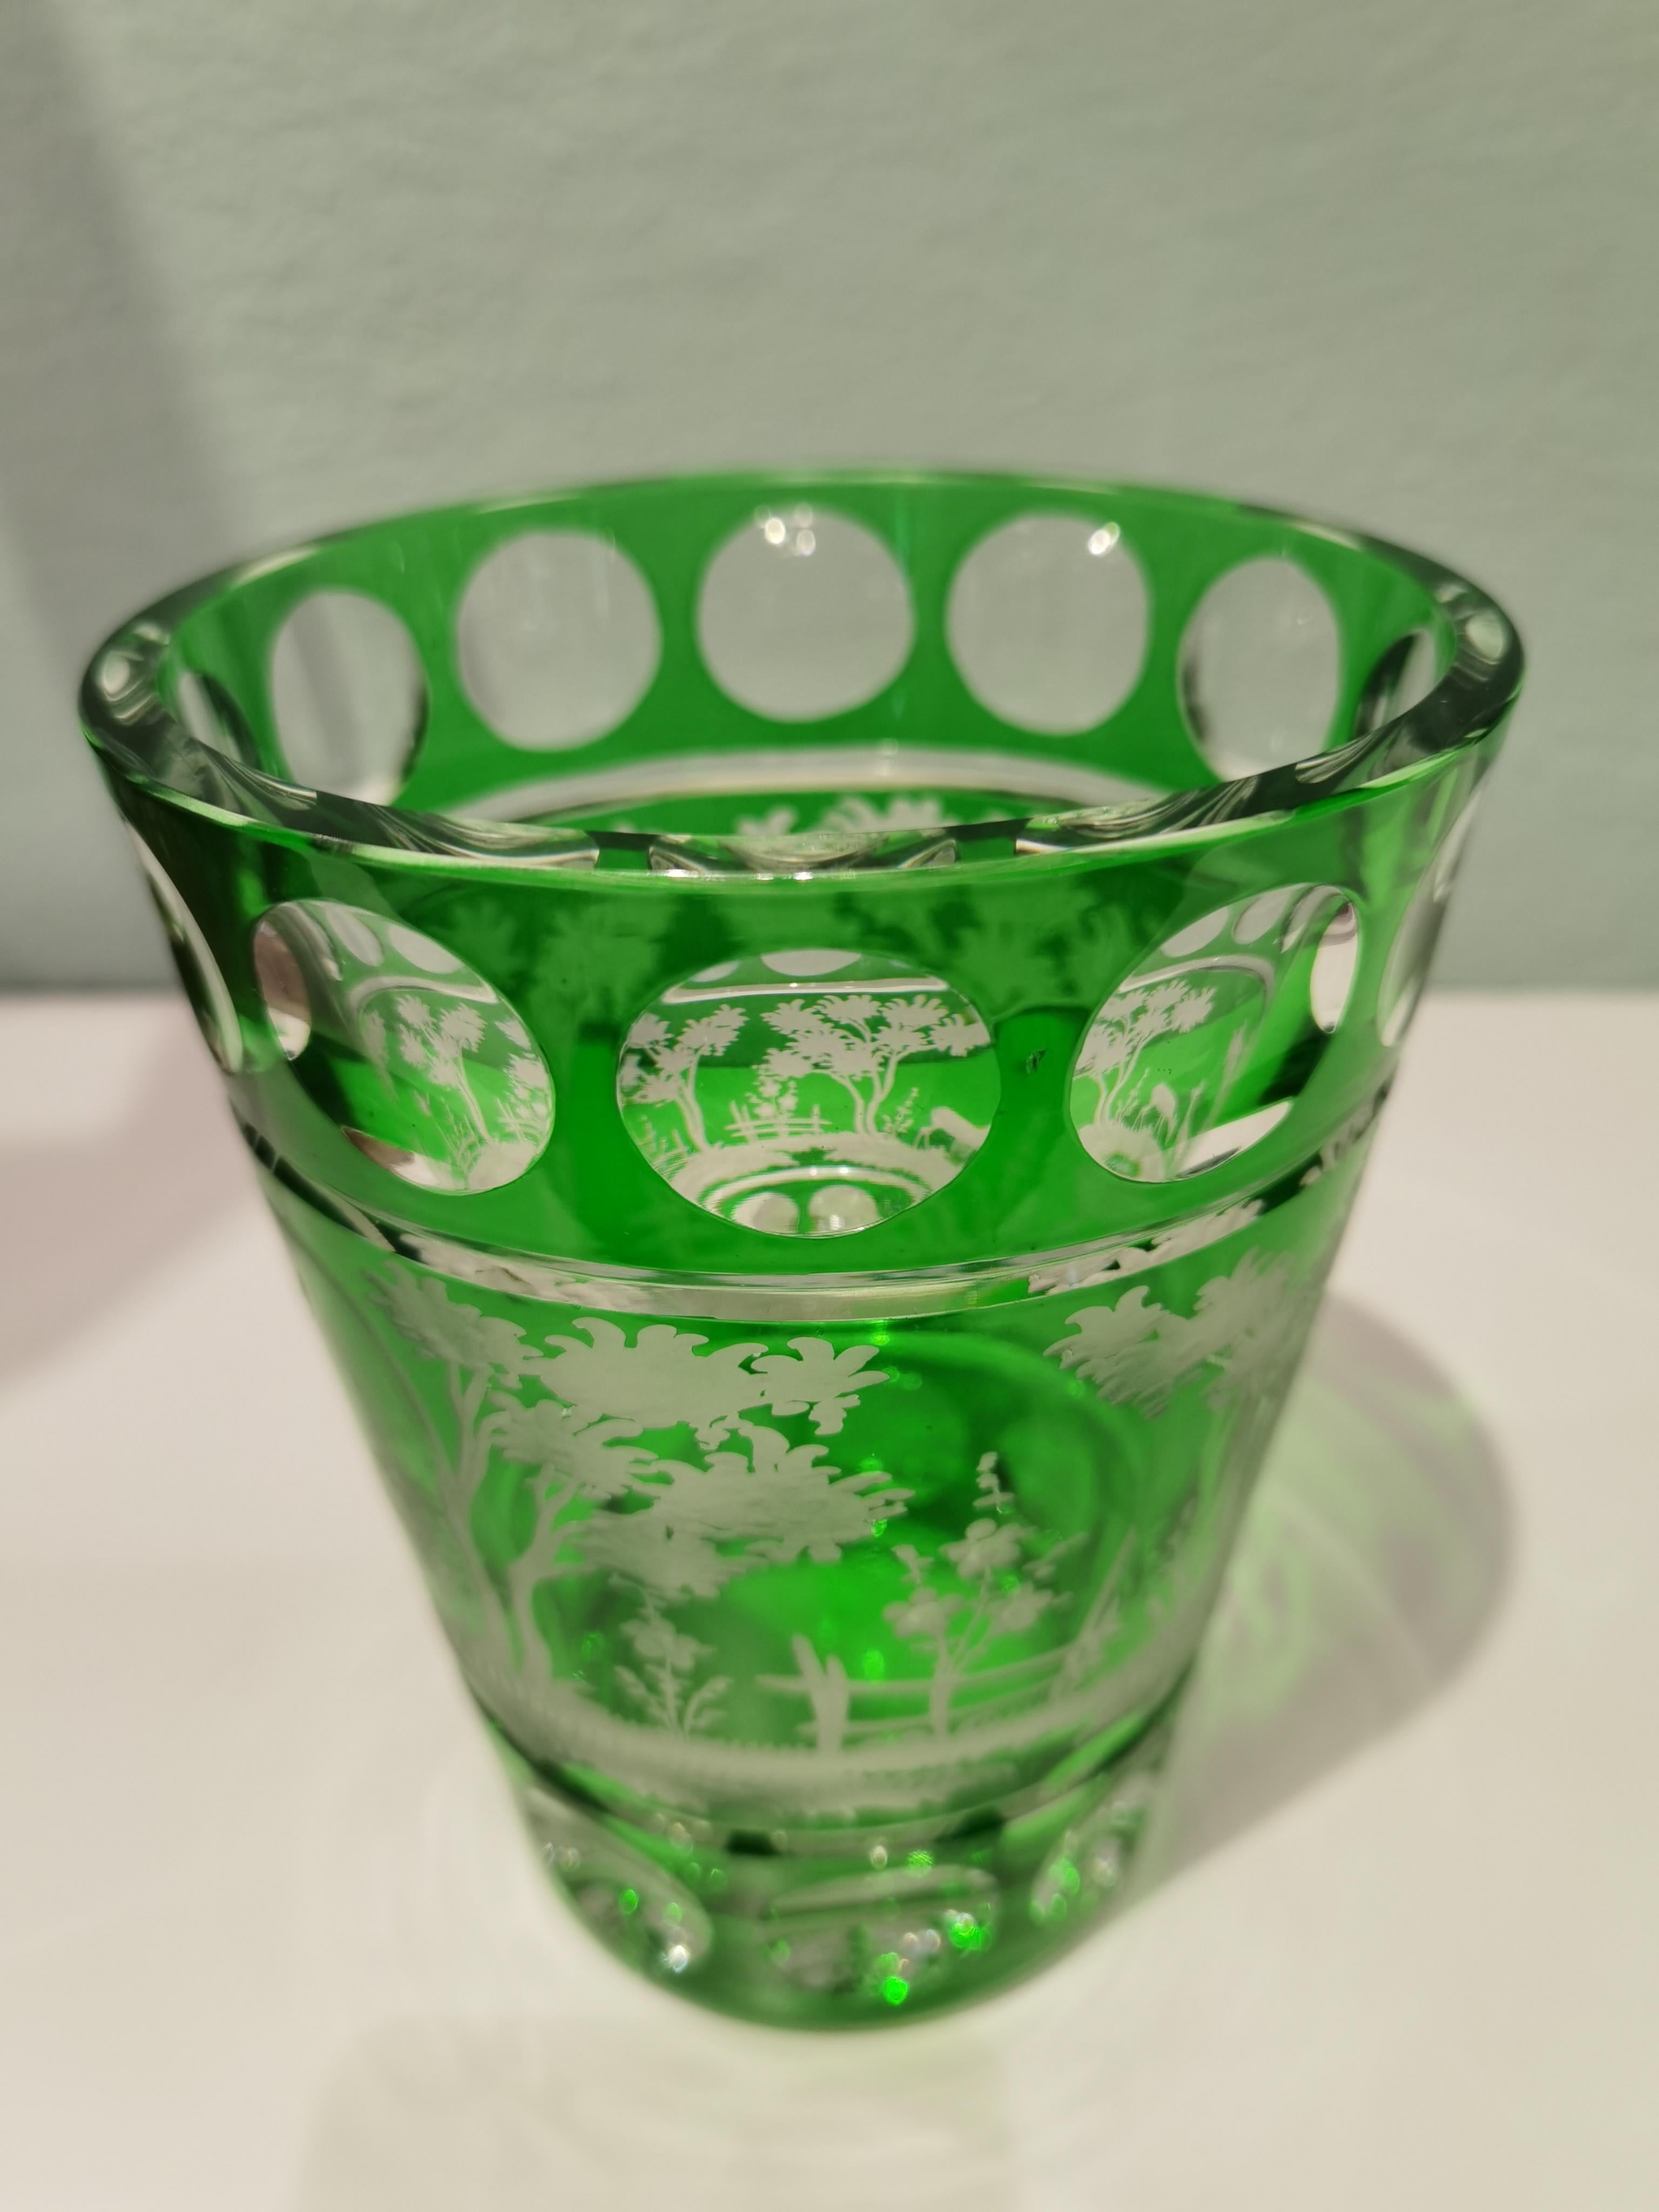 Vase en cristal de Pâques soufflé à la main en verre vert avec un décor de style campagnard tout autour. Les feuilles, le bouleau de Pâques et les cerfs sont gravés à la main par des artistes verriers en Bavière/Allemagne. Le verre présenté ici est